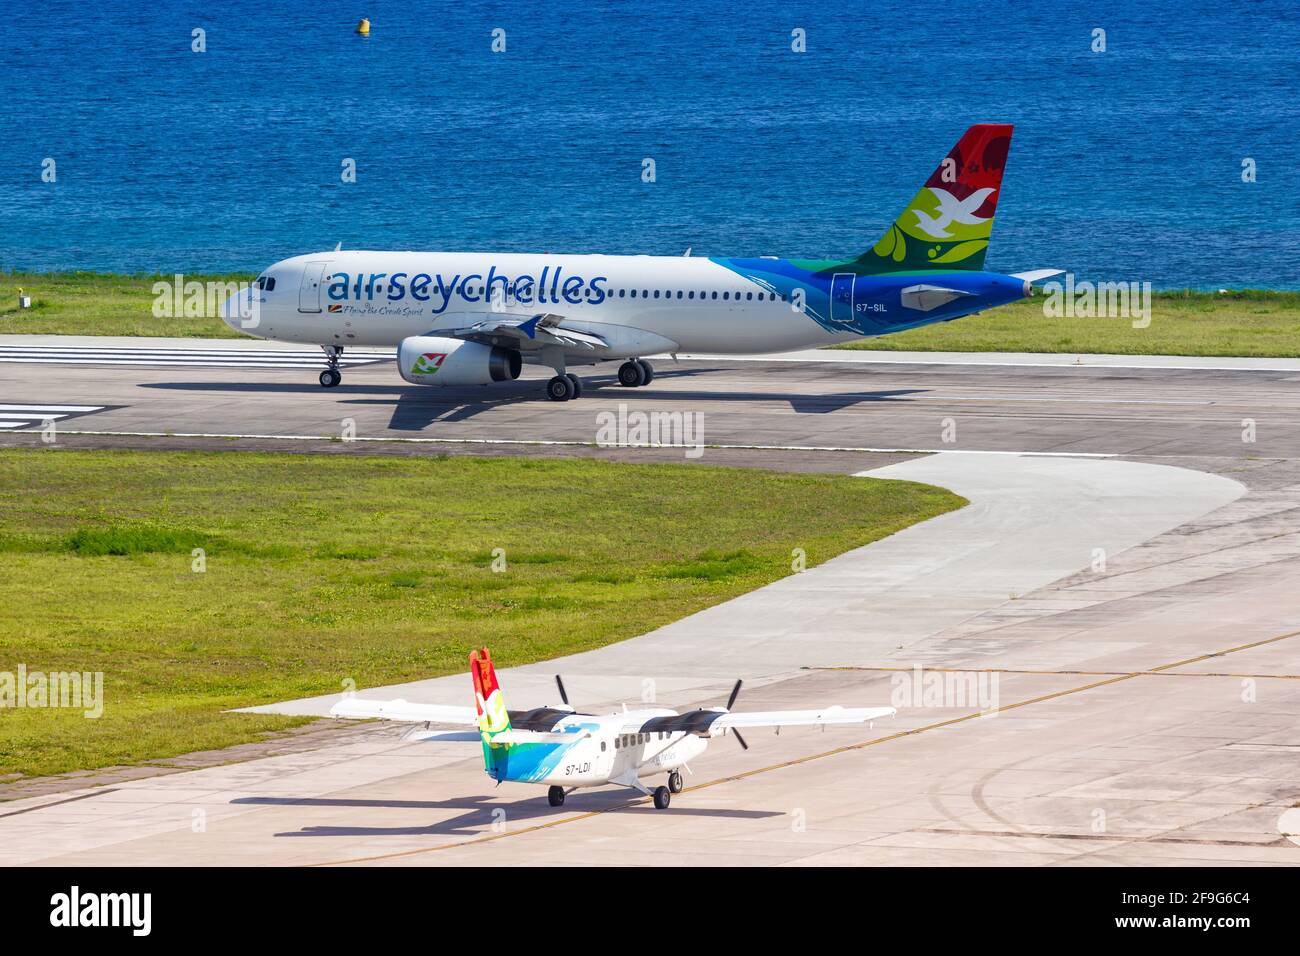 Mahé, Seychelles - 25 novembre 2017 : avions Air Seychelles à l'aéroport international des Seychelles (SEZ) aux Seychelles. Airbus est un avion européen Banque D'Images